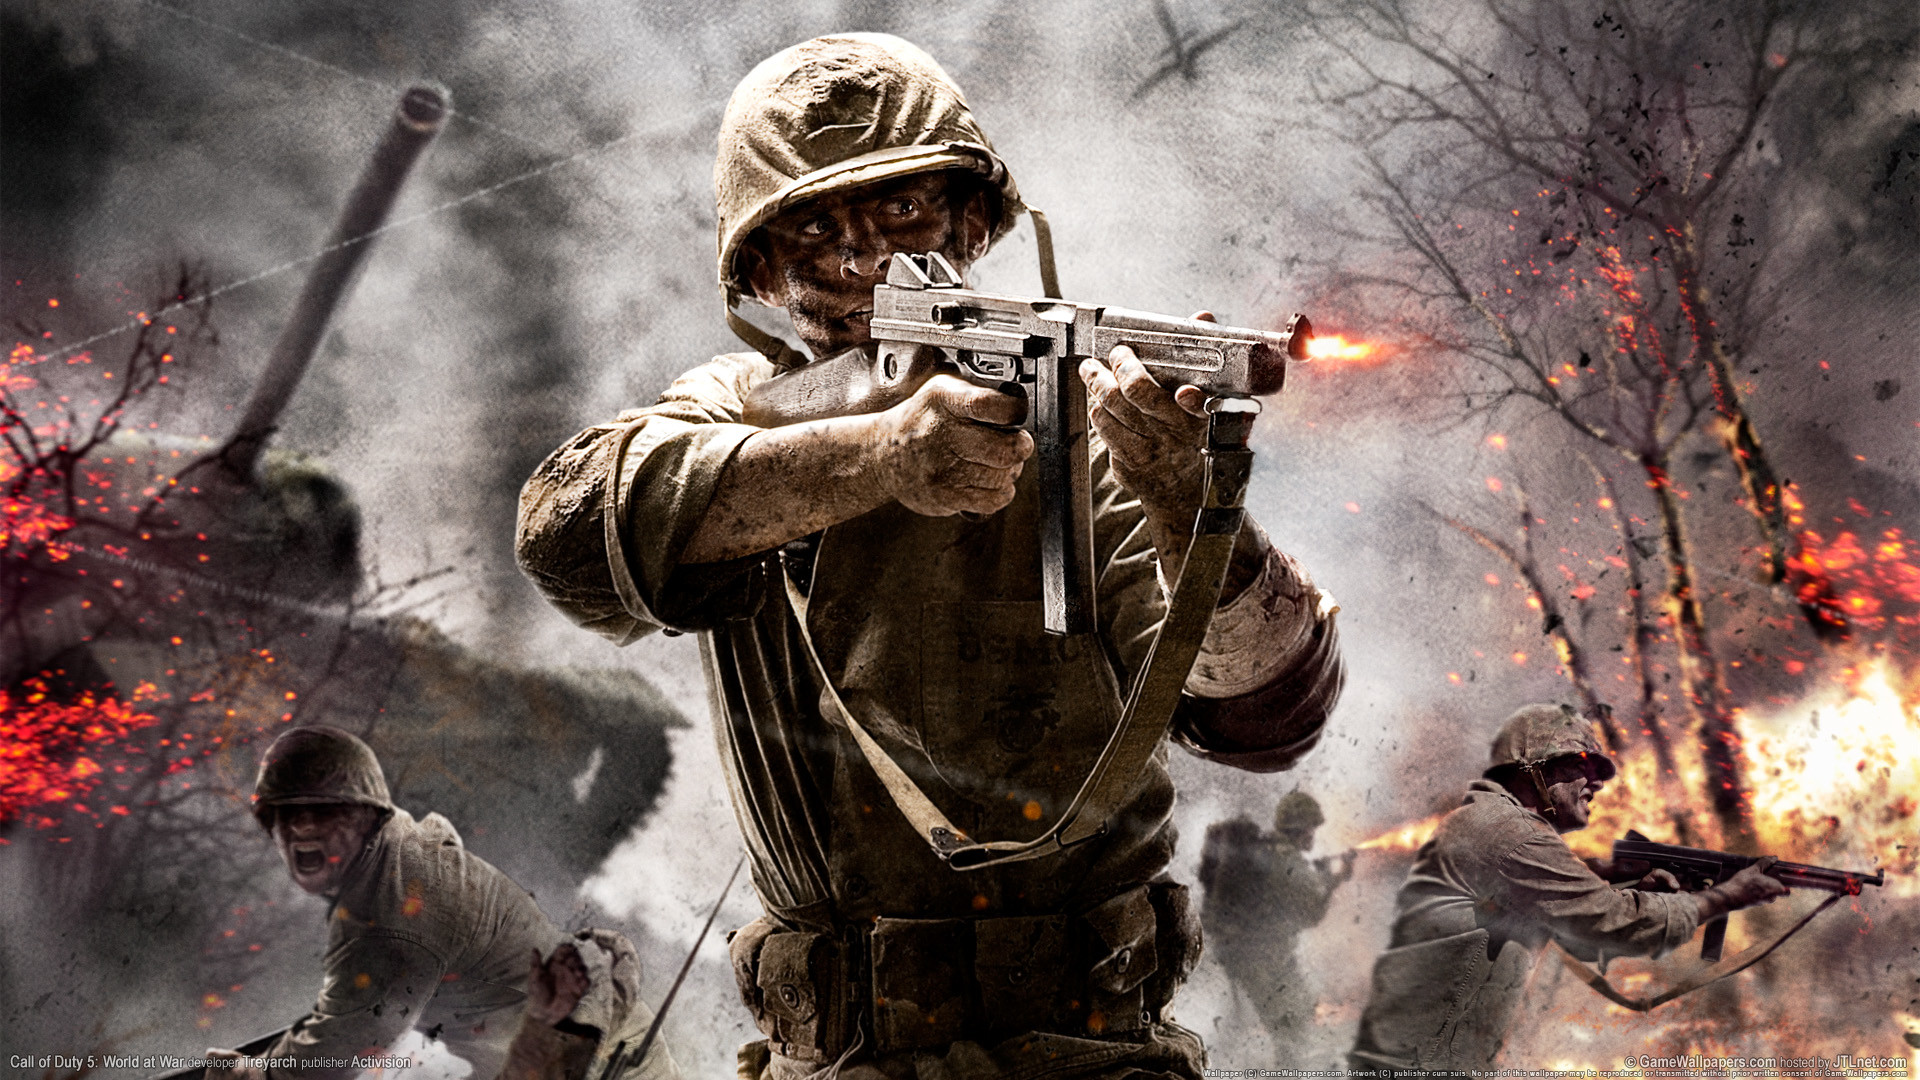 Call Of Duty World At War Wallpaper 1920x1080 ① Wallpapertag